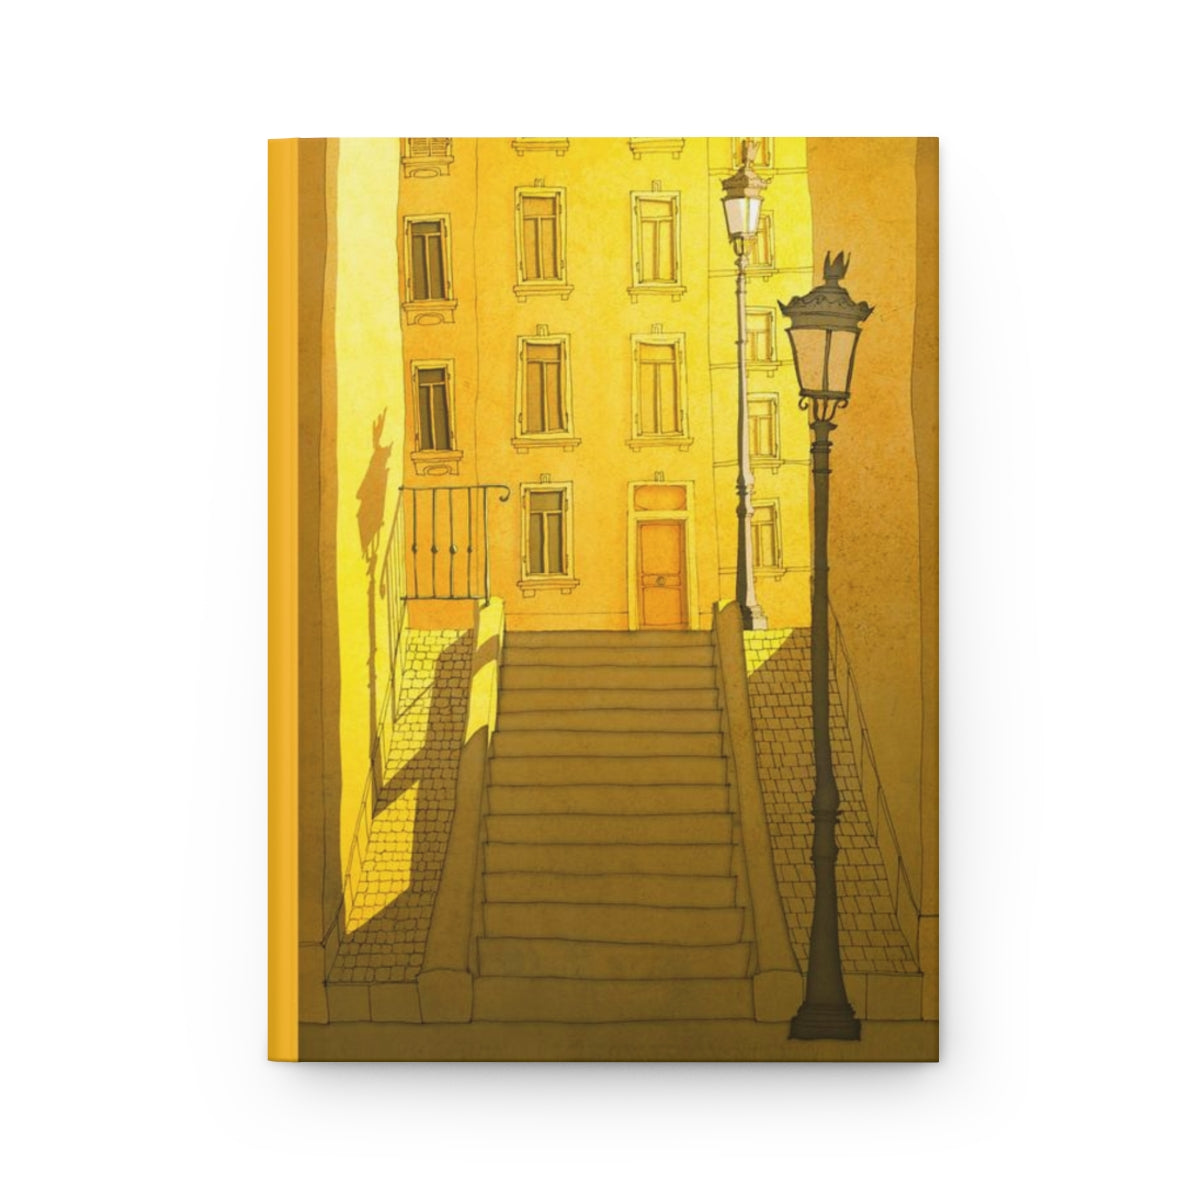 Morning shine - Paris Art Journal No.8